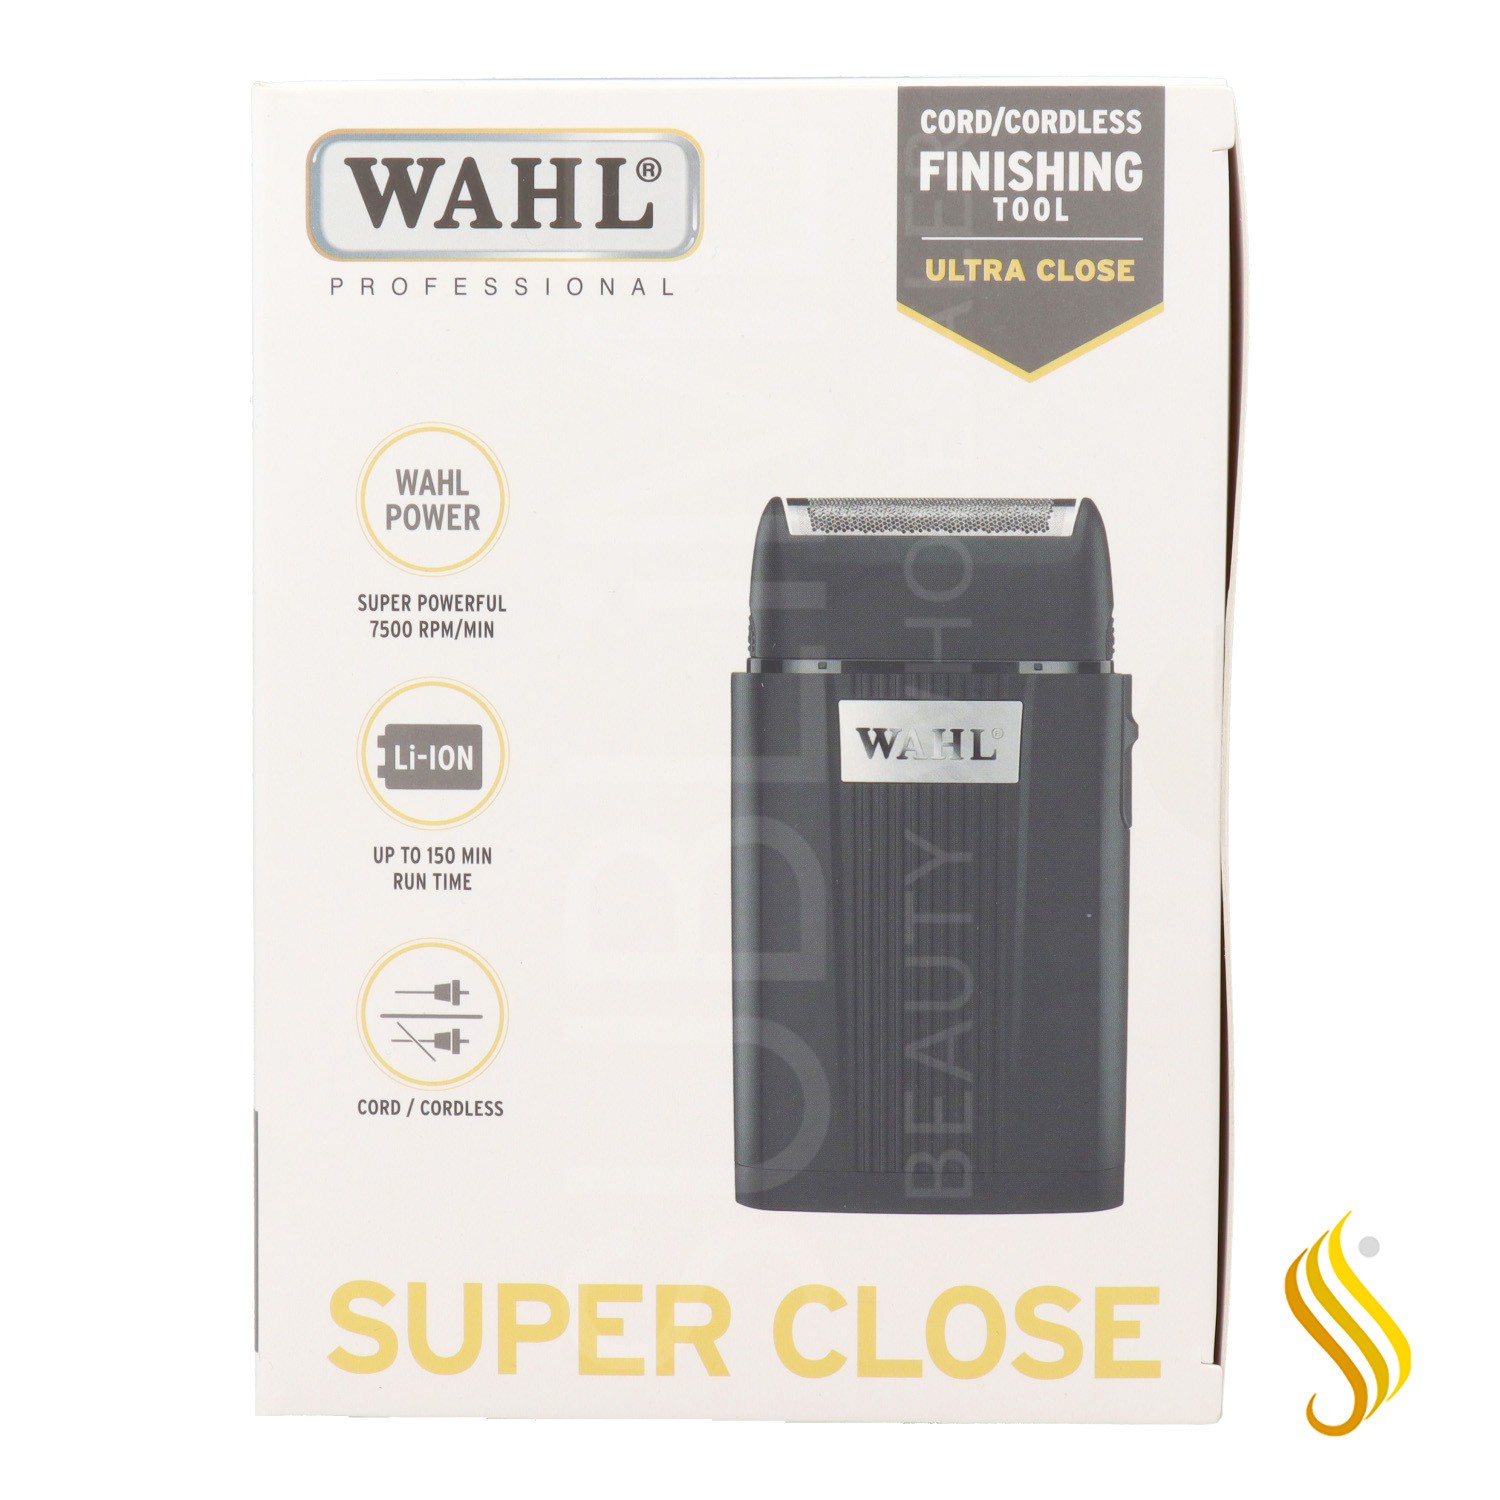 Wahl Maq Super Close Cord/Cordless